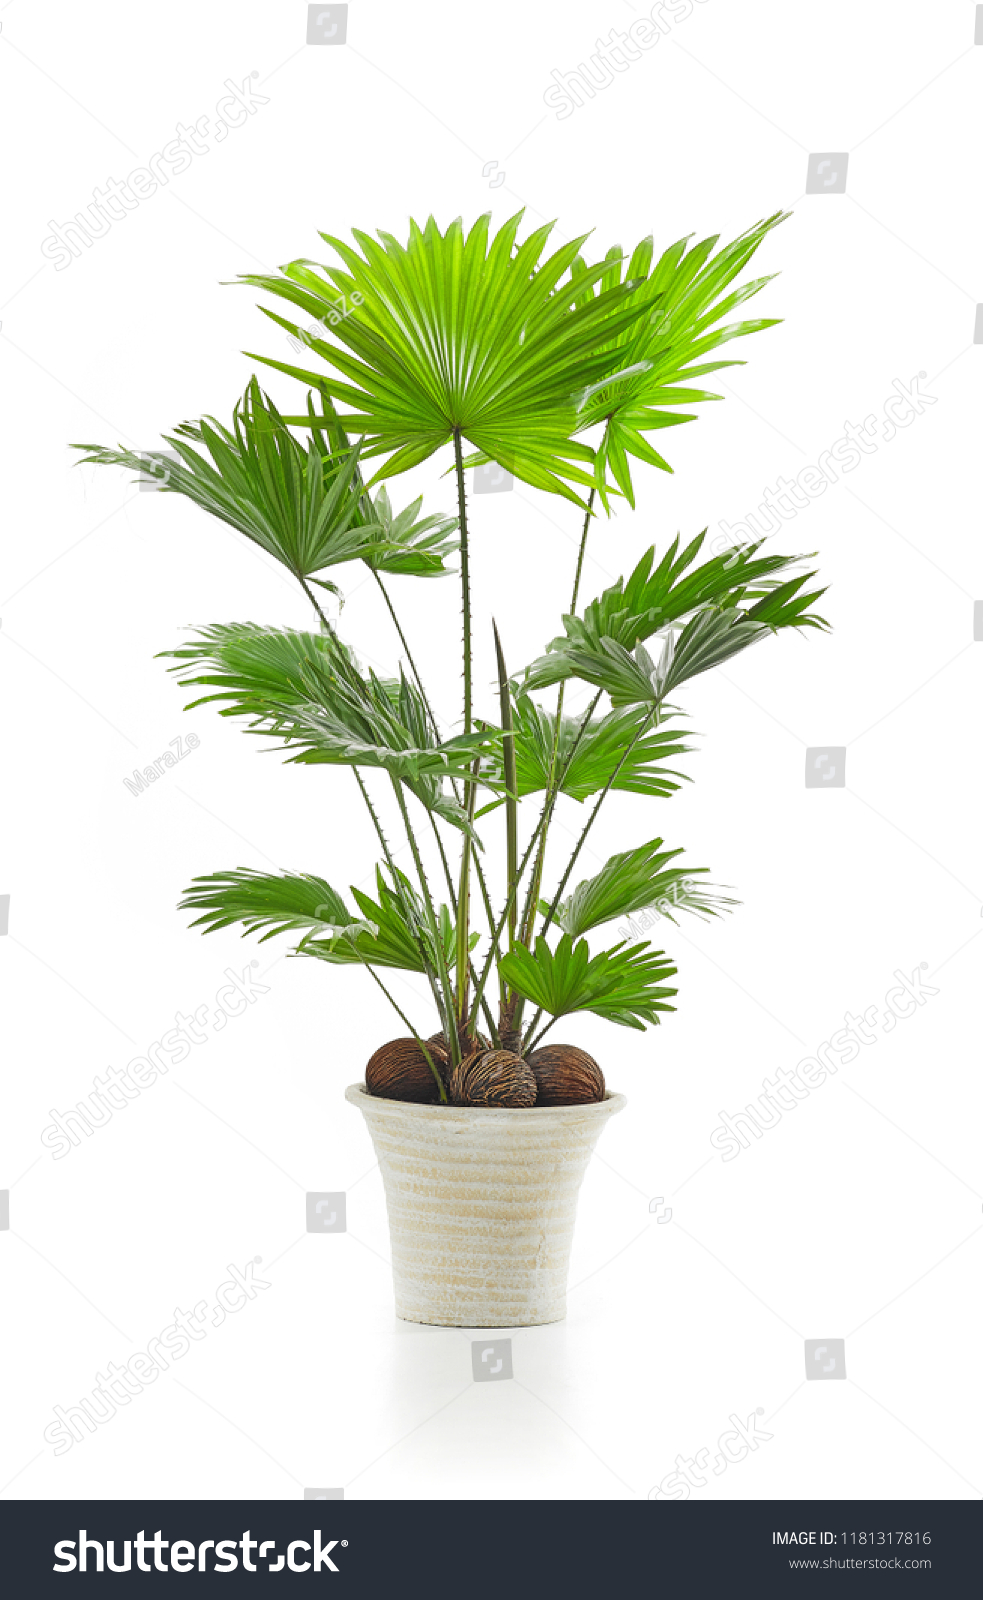 Livistona palm tree isolated on white background #1181317816